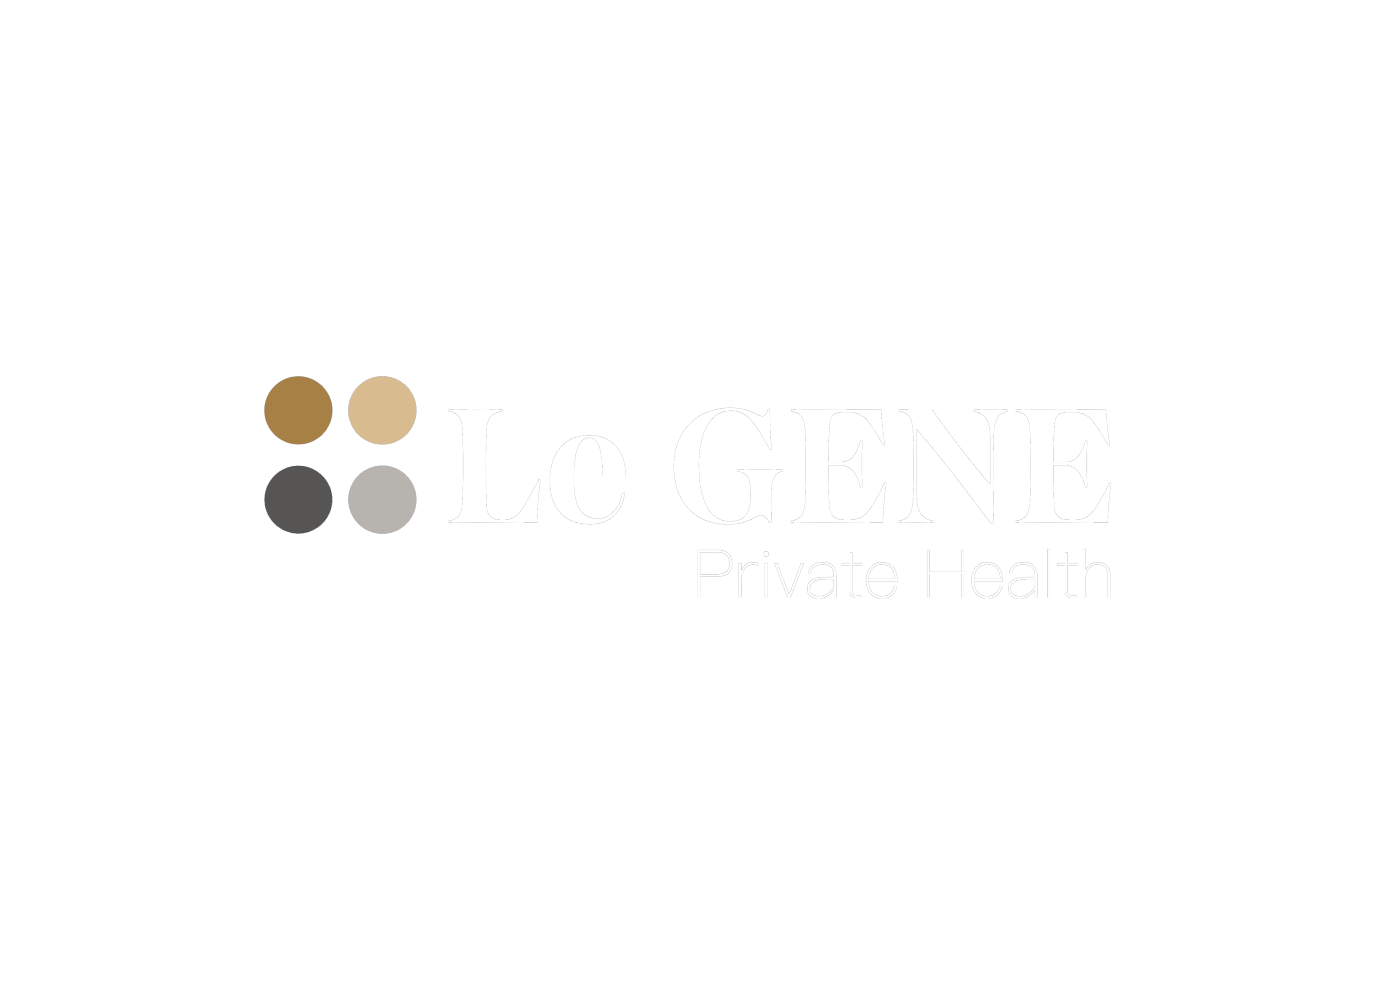 Le GENE Private Health